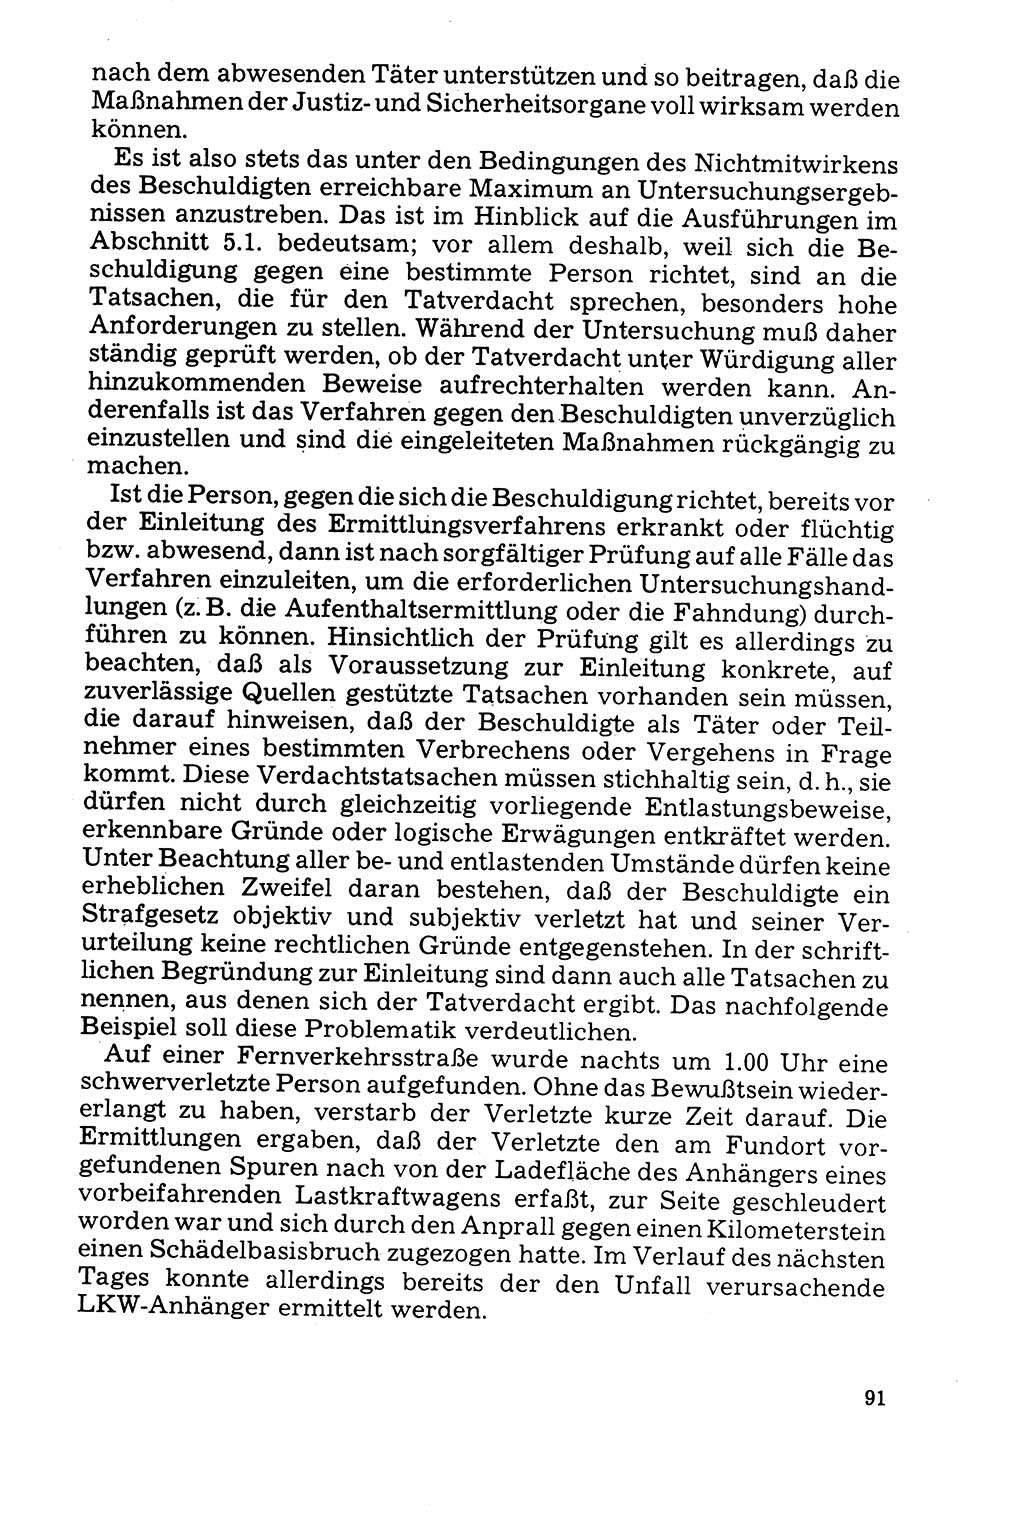 Der Abschluß des Ermittlungsverfahrens [Deutsche Demokratische Republik (DDR)] 1978, Seite 91 (Abschl. EV DDR 1978, S. 91)